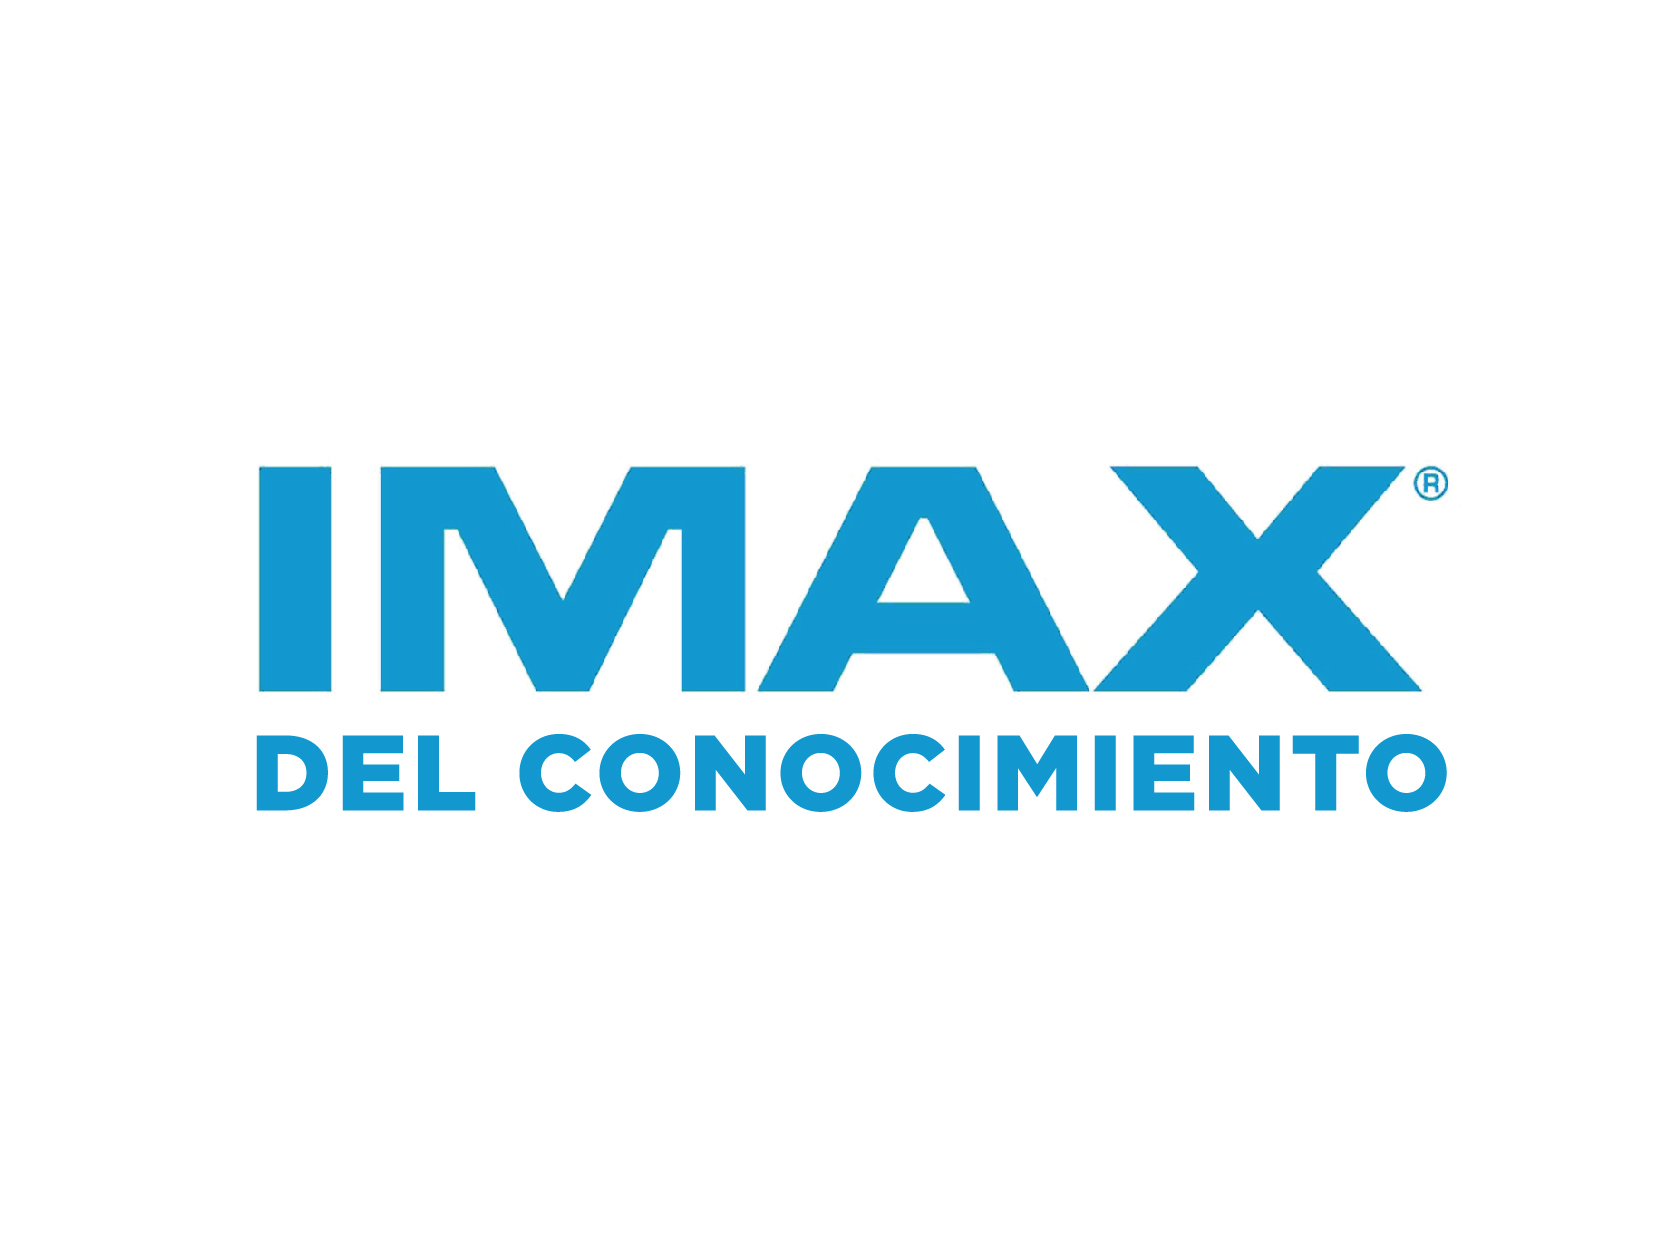 IMAX del conocimiento